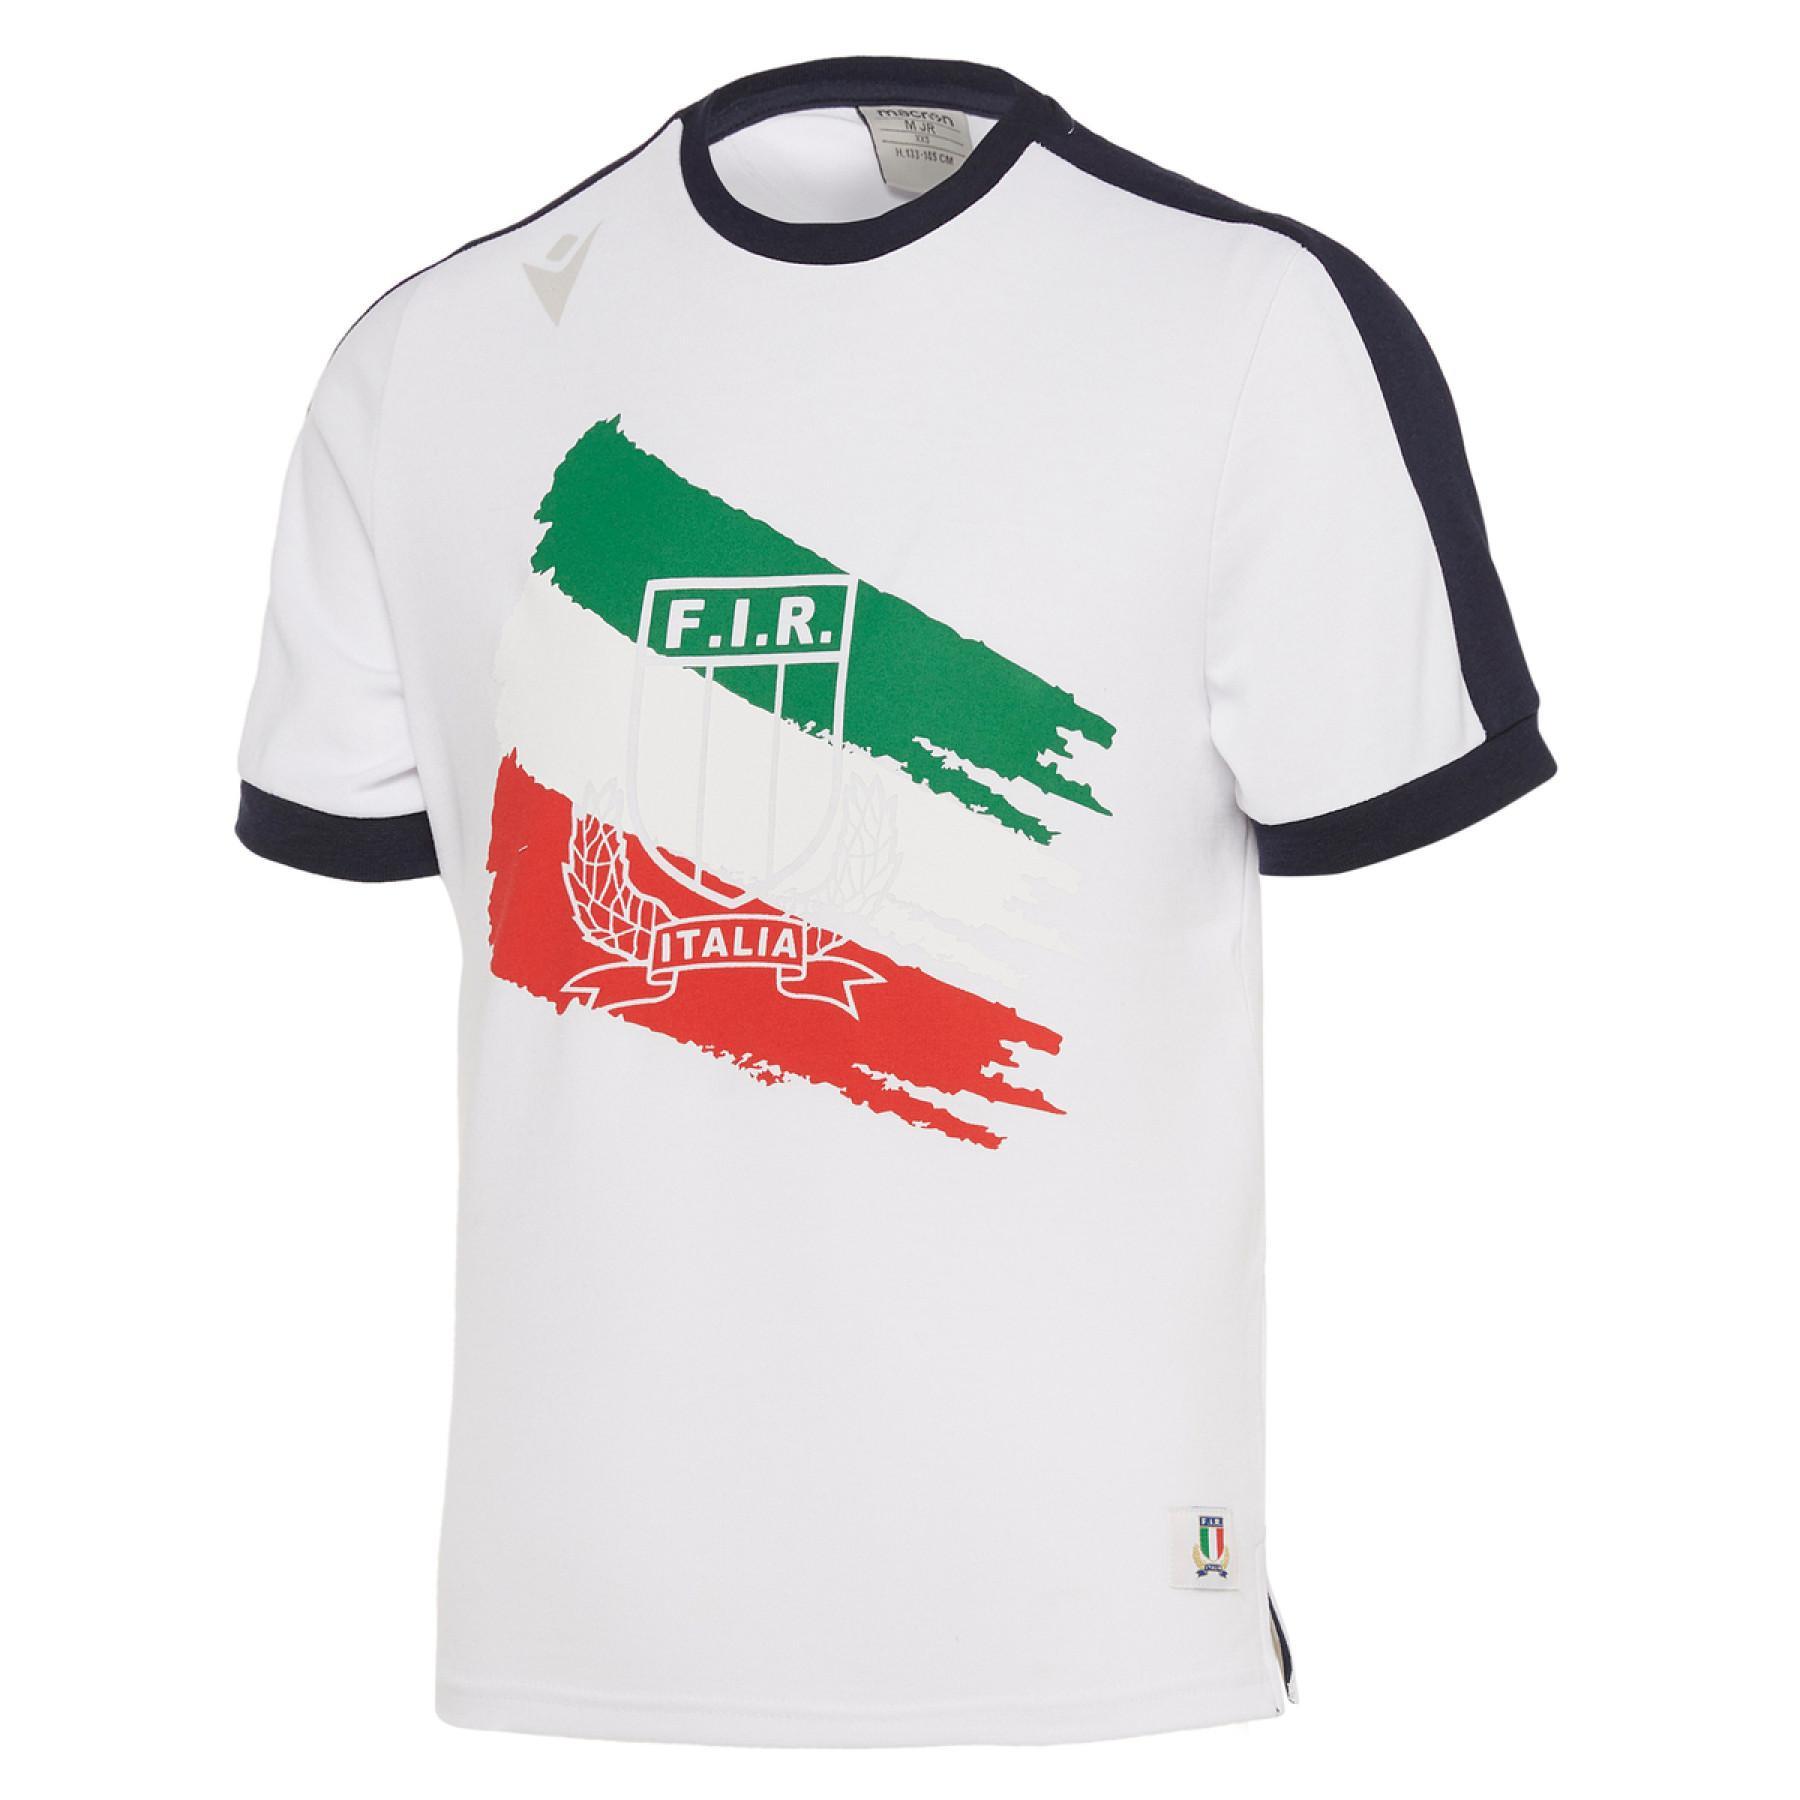 T-shirt de algodão para crianças Italie rugby 2019